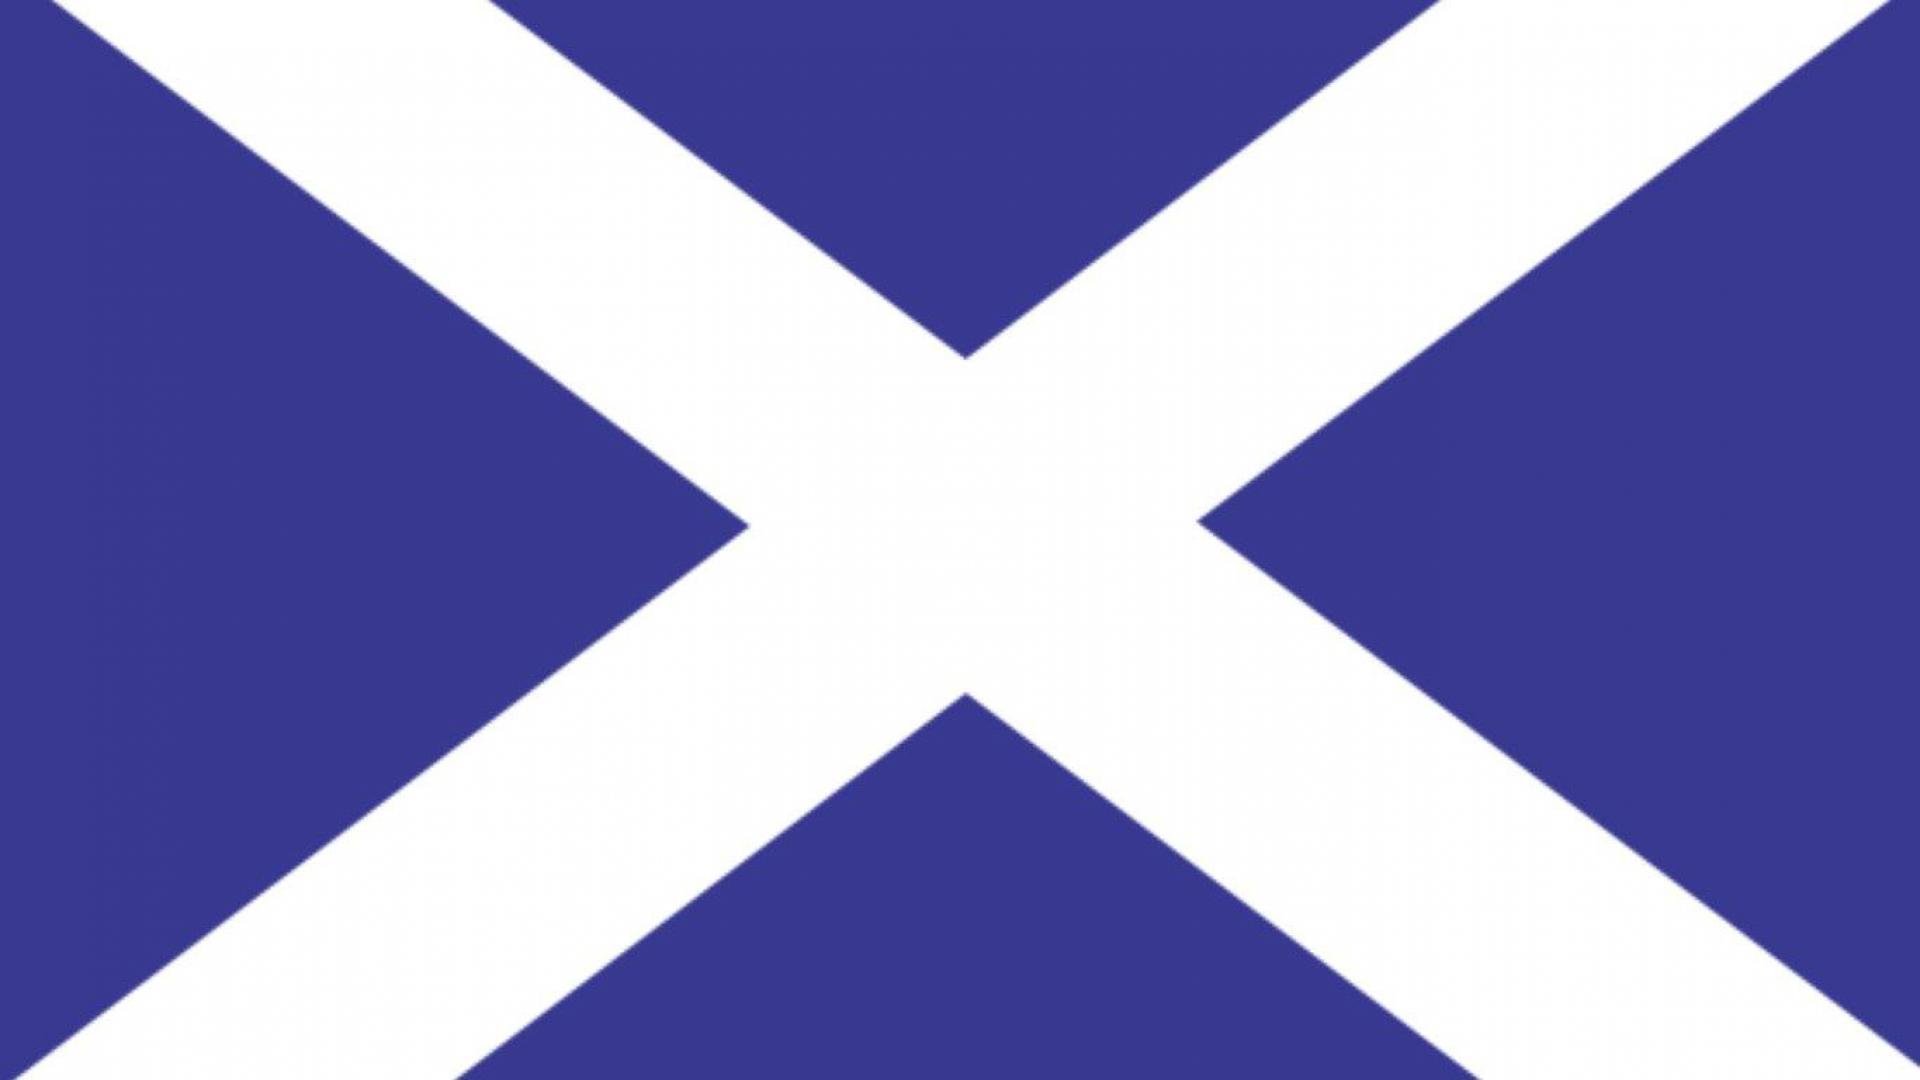 герб шотландии фото